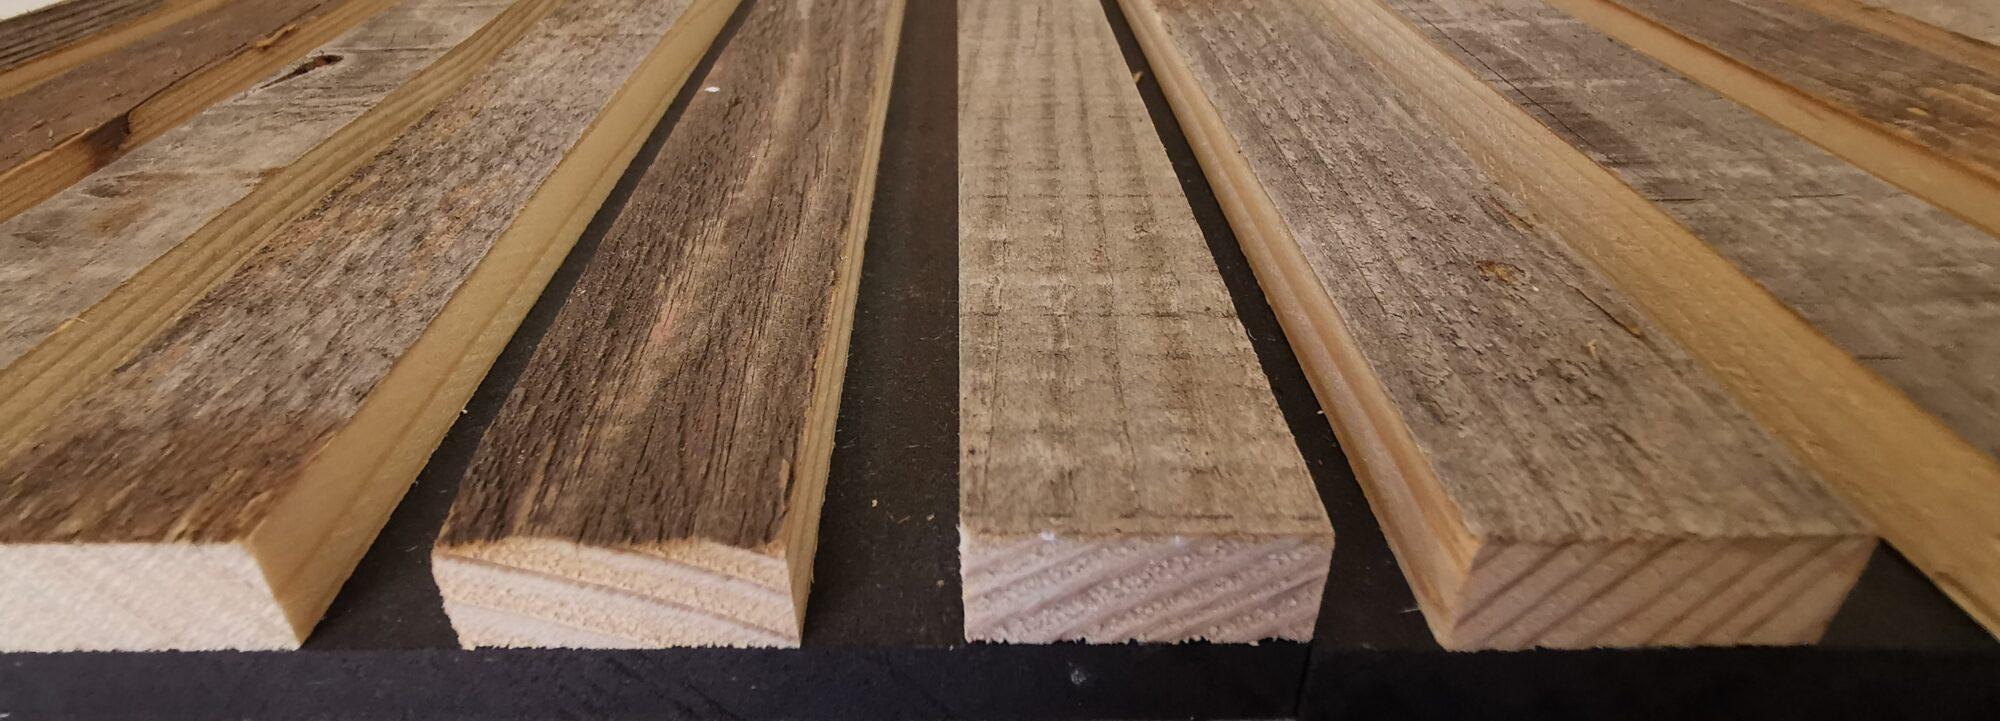 Paneles alistonados de madera para revestimientos, Mobel 6000